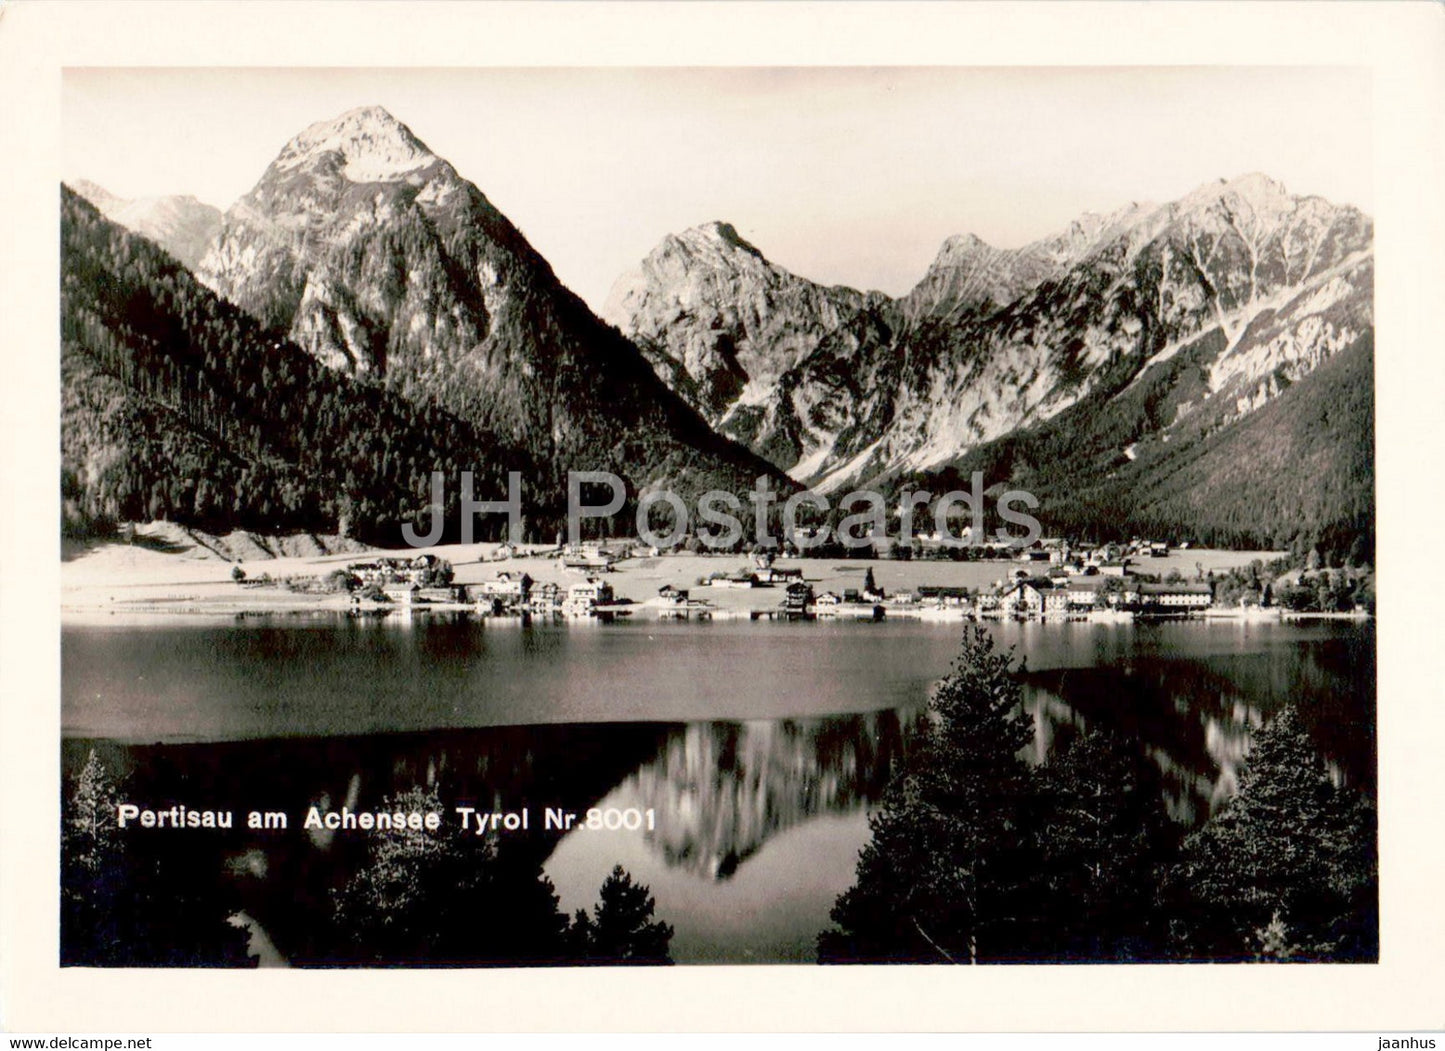 Pertisau am Achensee Tyrol Nr 8001 - old postcard - Austria - unused - JH Postcards